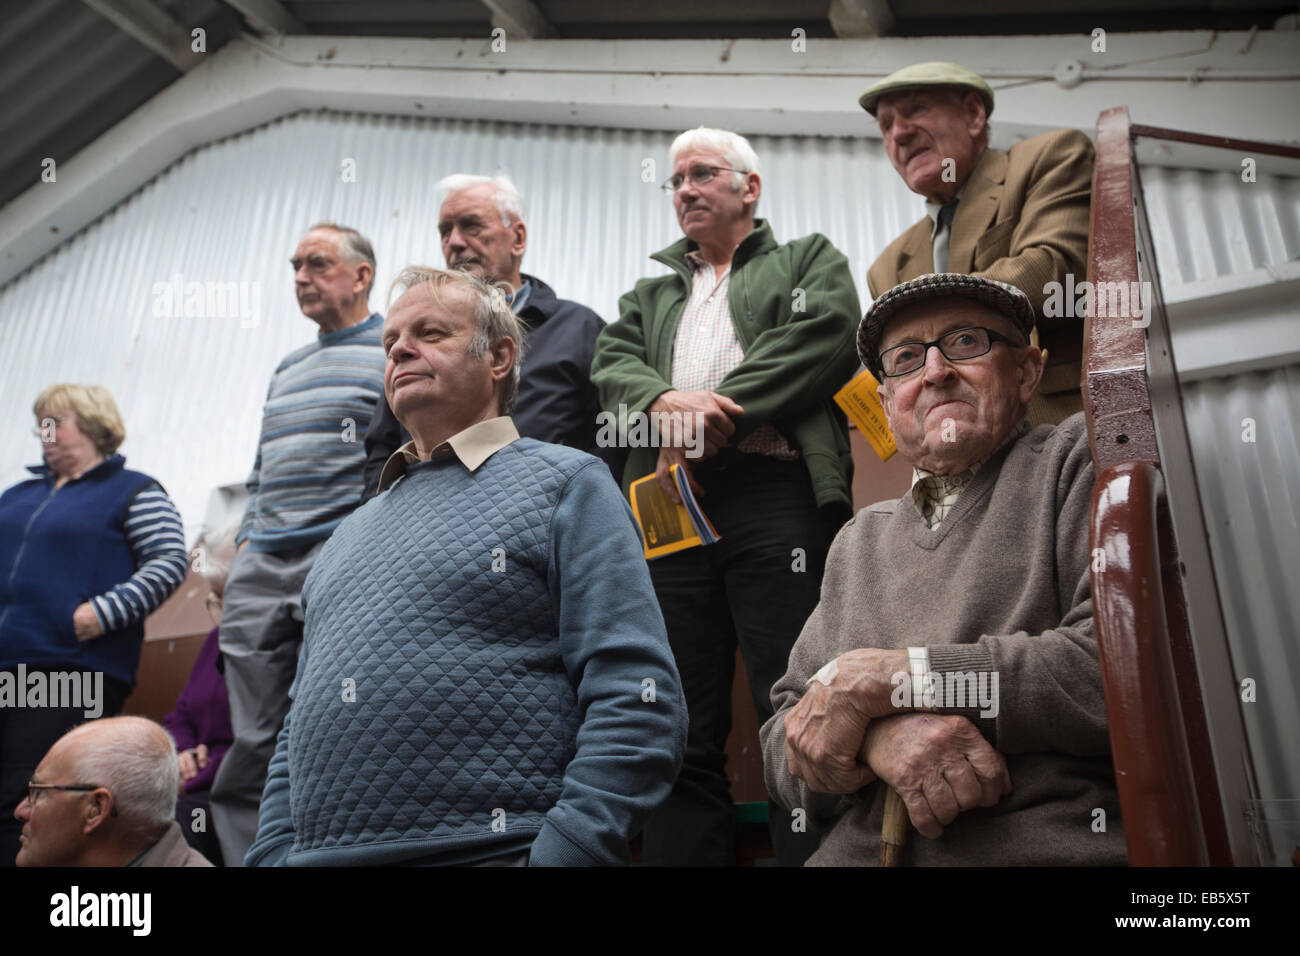 Un groupe d'hommes regardant le jugement de la compétition à la brebis Dalmally Agricultural Society Show à Dalmally, en Écosse. Banque D'Images